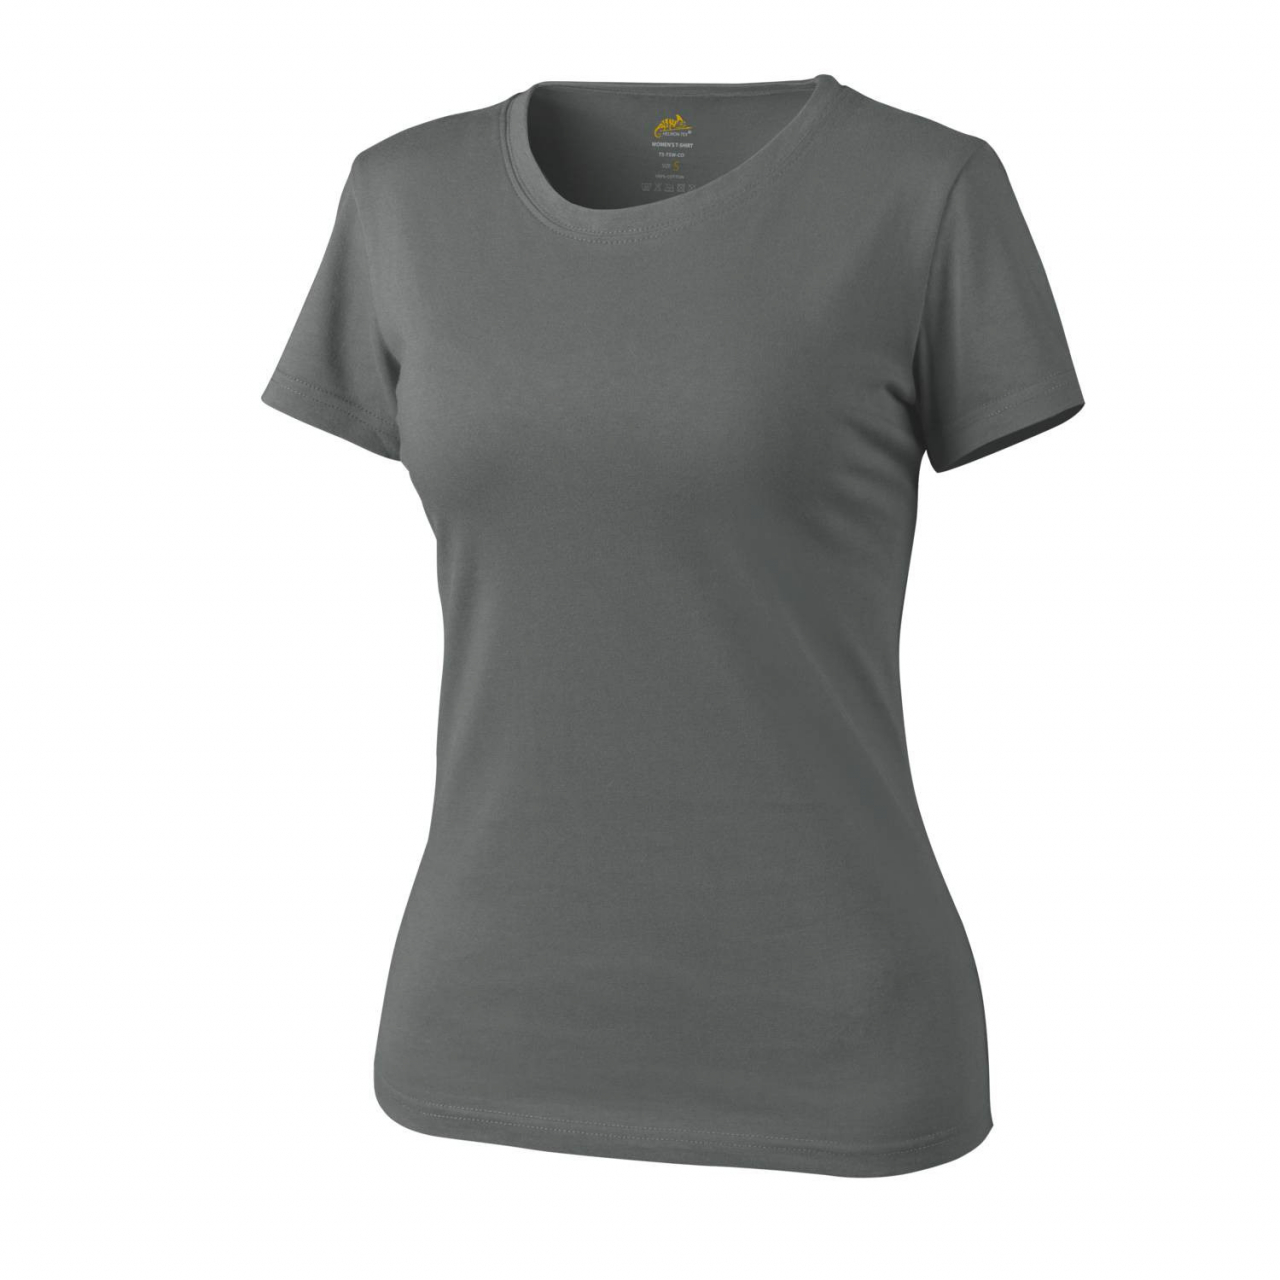 Tričko dámské Helikon Womens Shirt - šedé, L